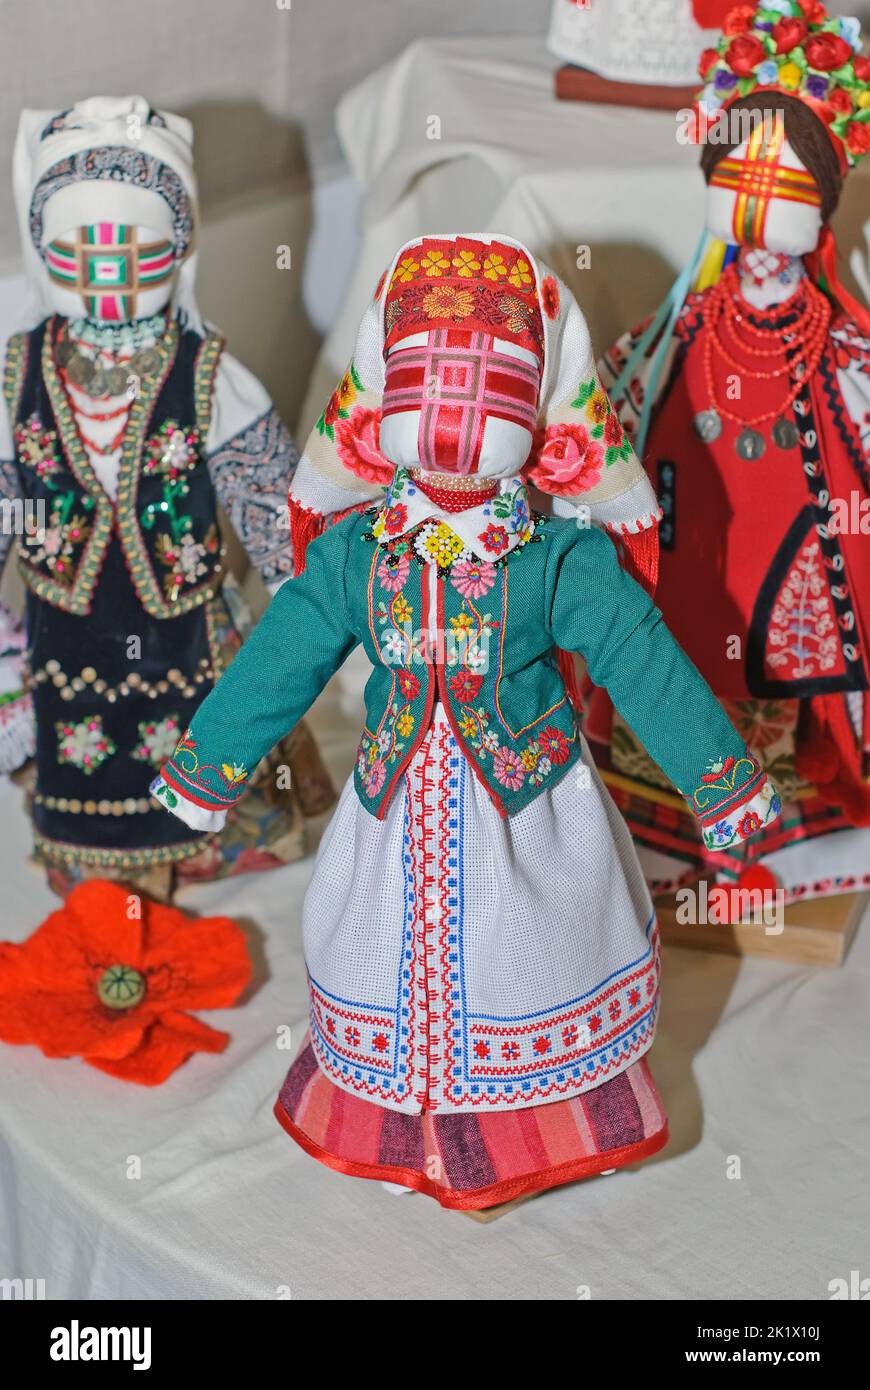 Une série de poupées folkloriques ukrainiennes de collection est exposée à l'exposition internationale Fashion Doll à Kiev, en Ukraine Banque D'Images